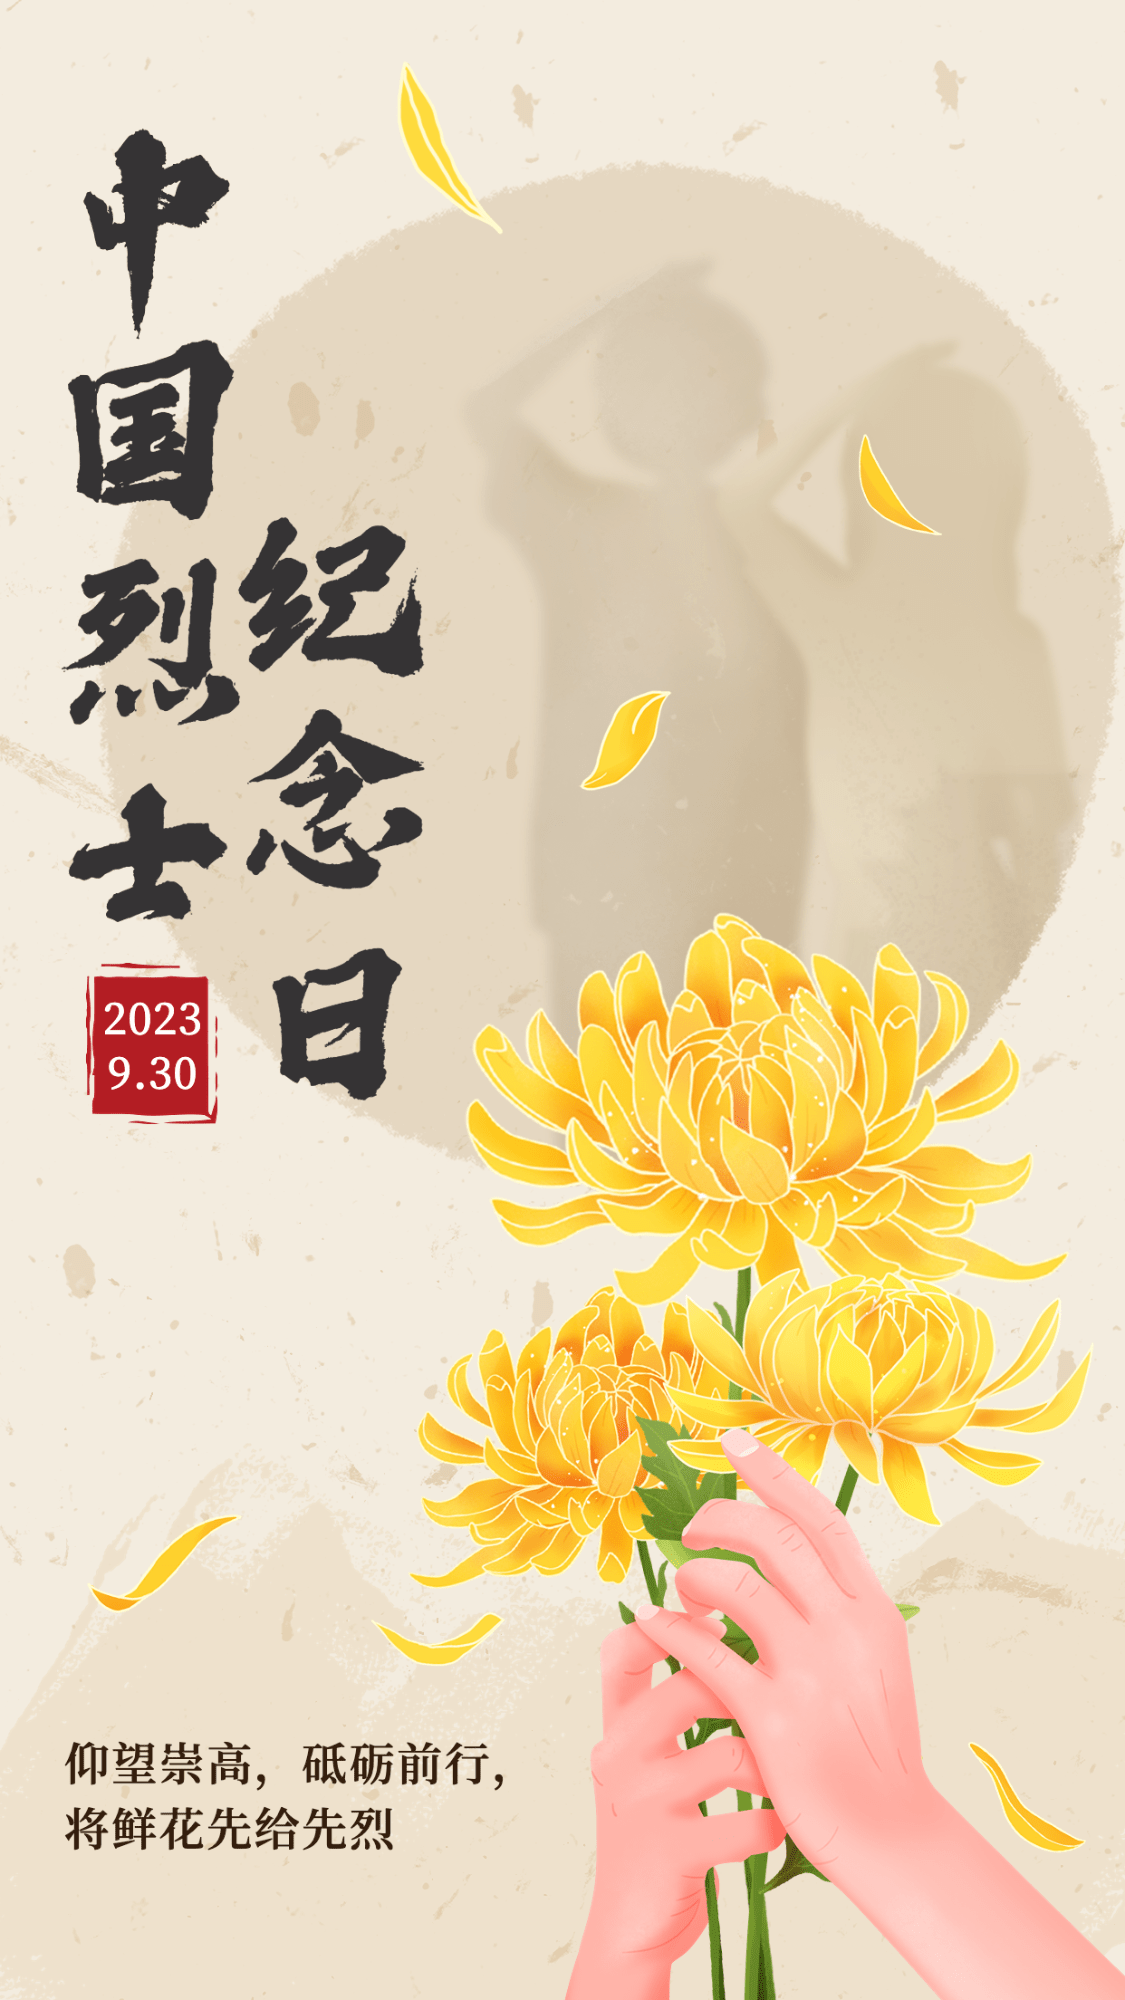 中国烈士纪念日节日宣传中国风插画手机海报预览效果